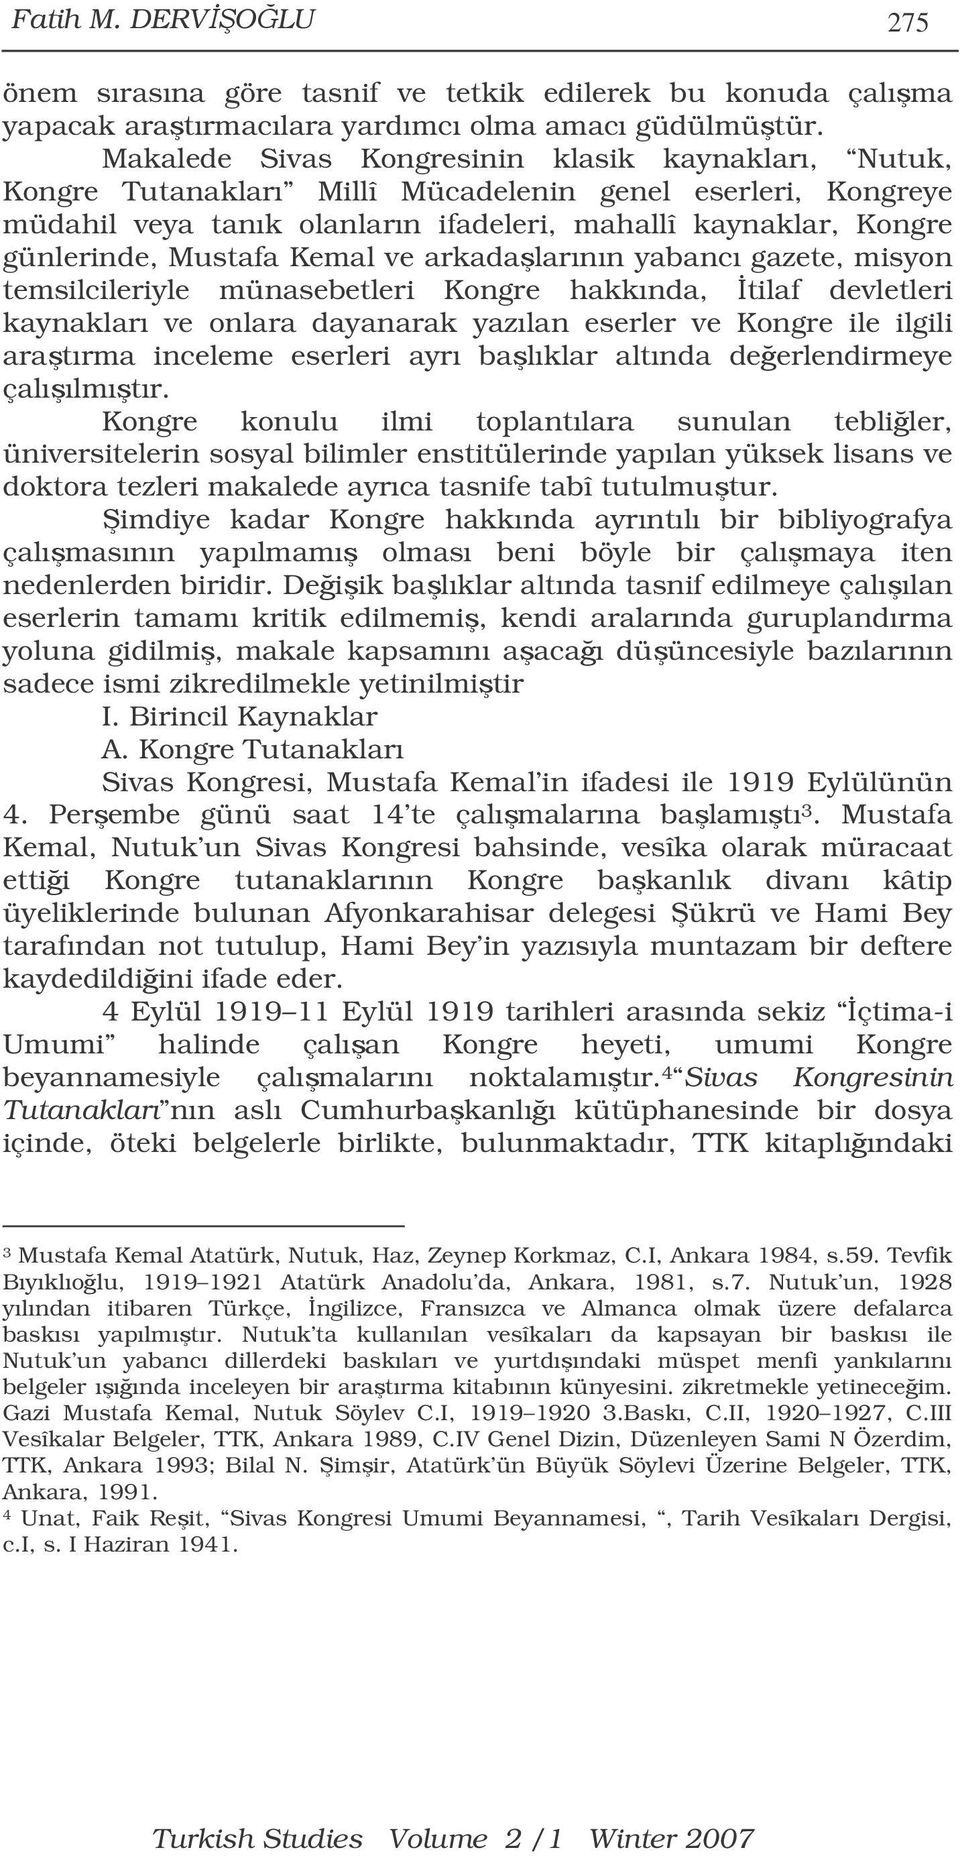 Mustafa Kemal ve arkadalarının yabancı gazete, misyon temsilcileriyle münasebetleri Kongre hakkında, tilaf devletleri kaynakları ve onlara dayanarak yazılan eserler ve Kongre ile ilgili aratırma